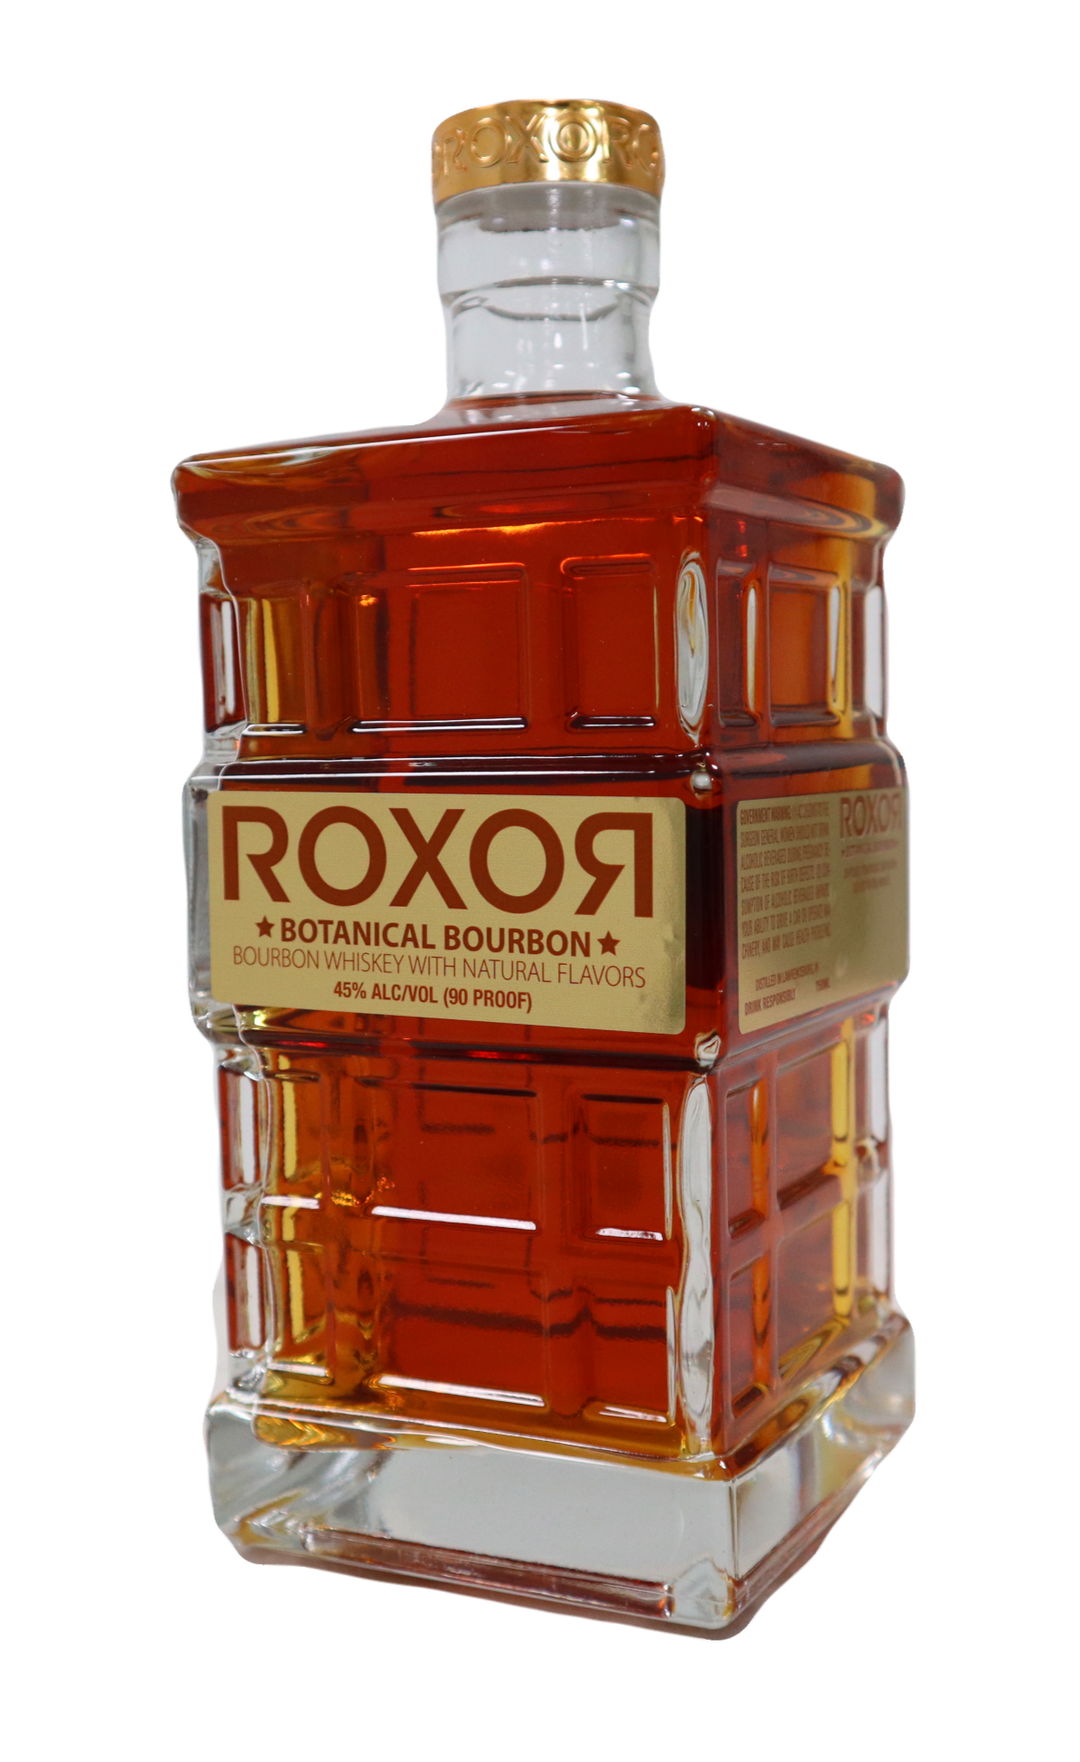 ROXOR Botanical Bourbon